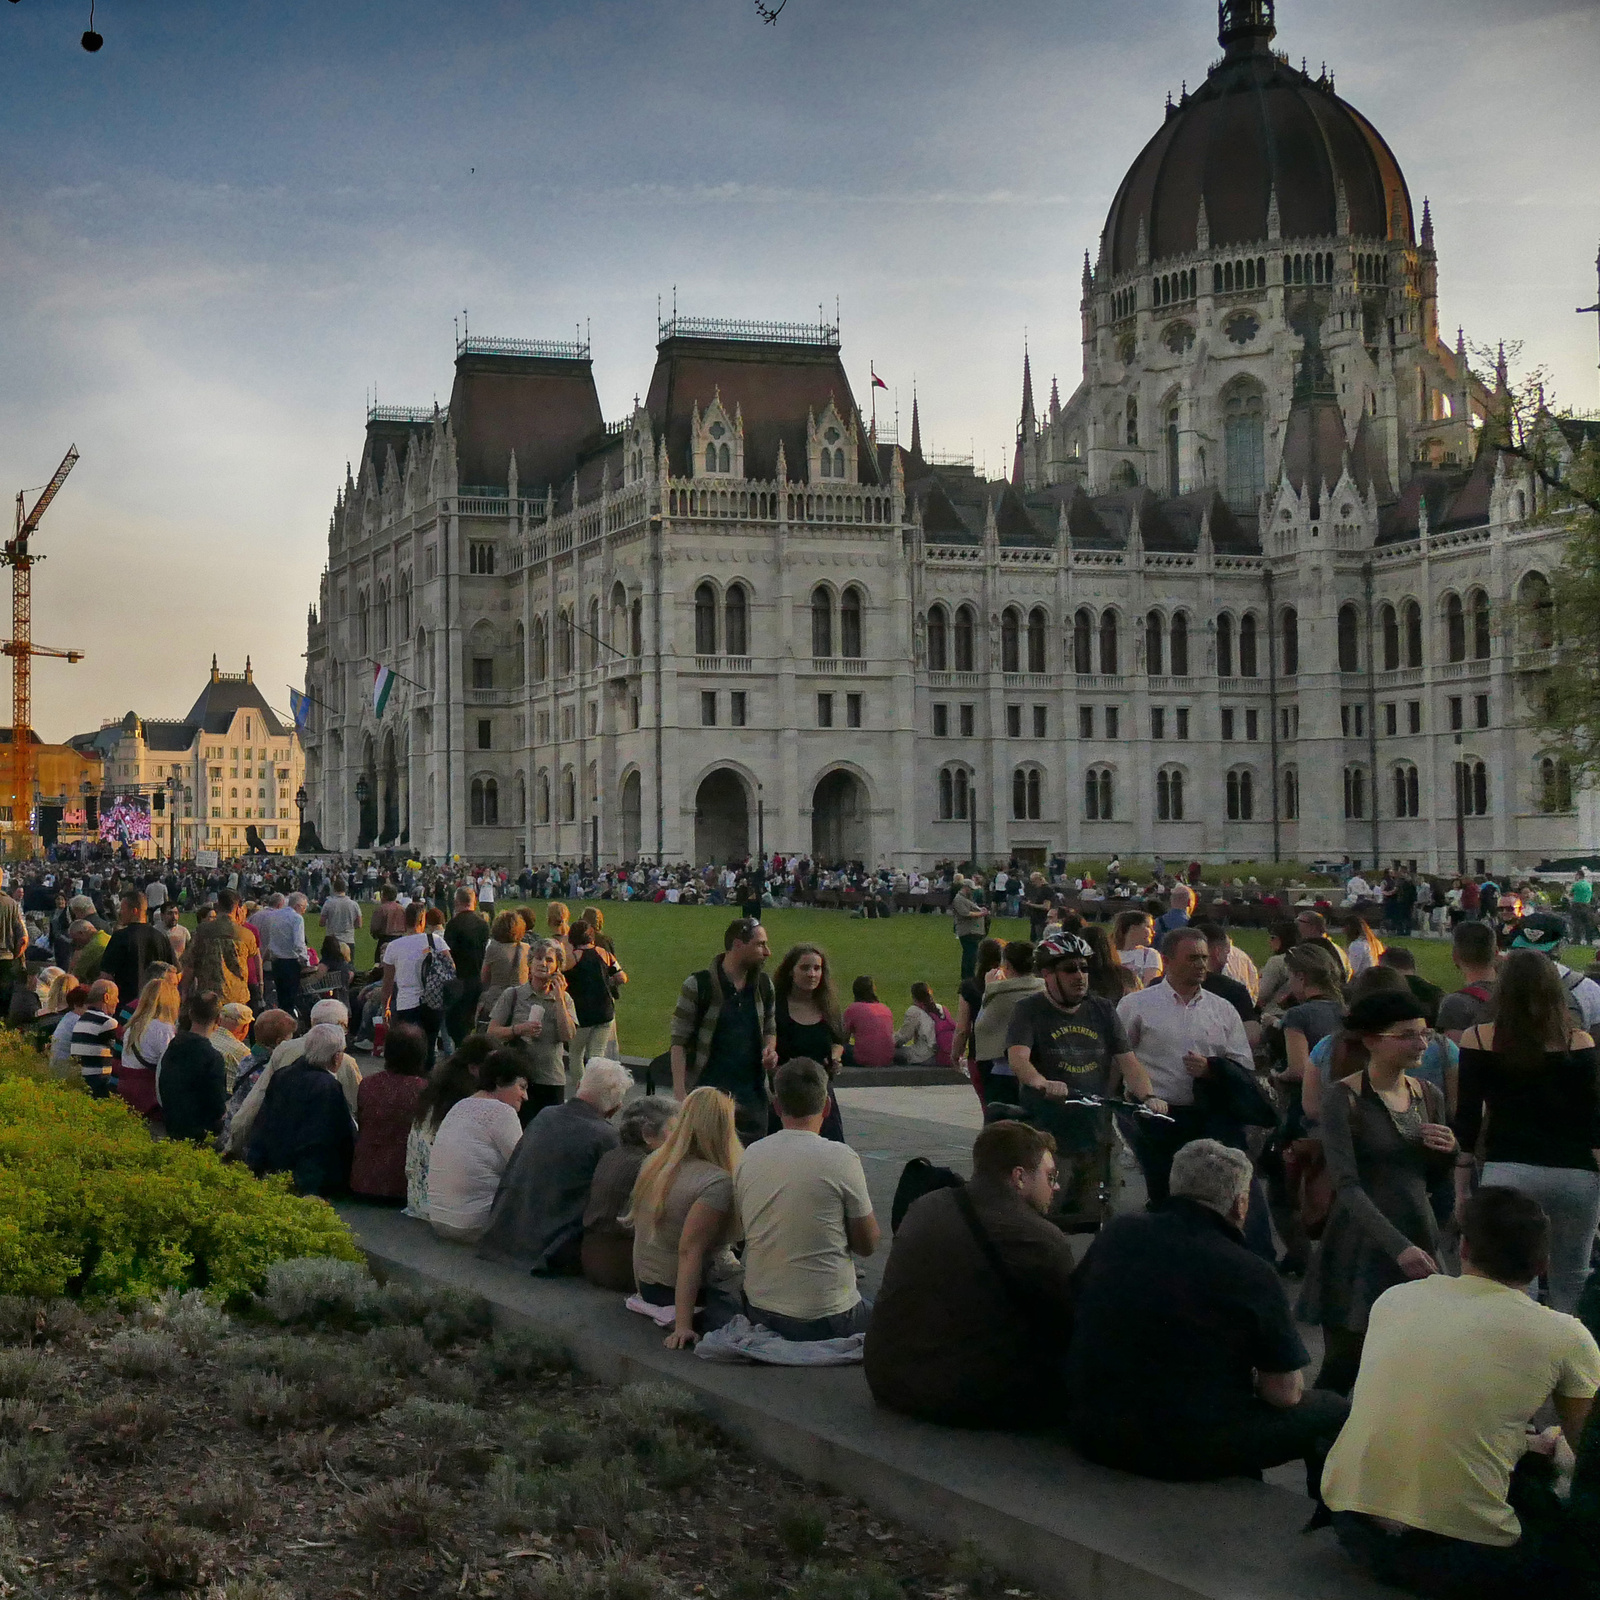 Mi vagyunk a többség - Kossuth téri piknik